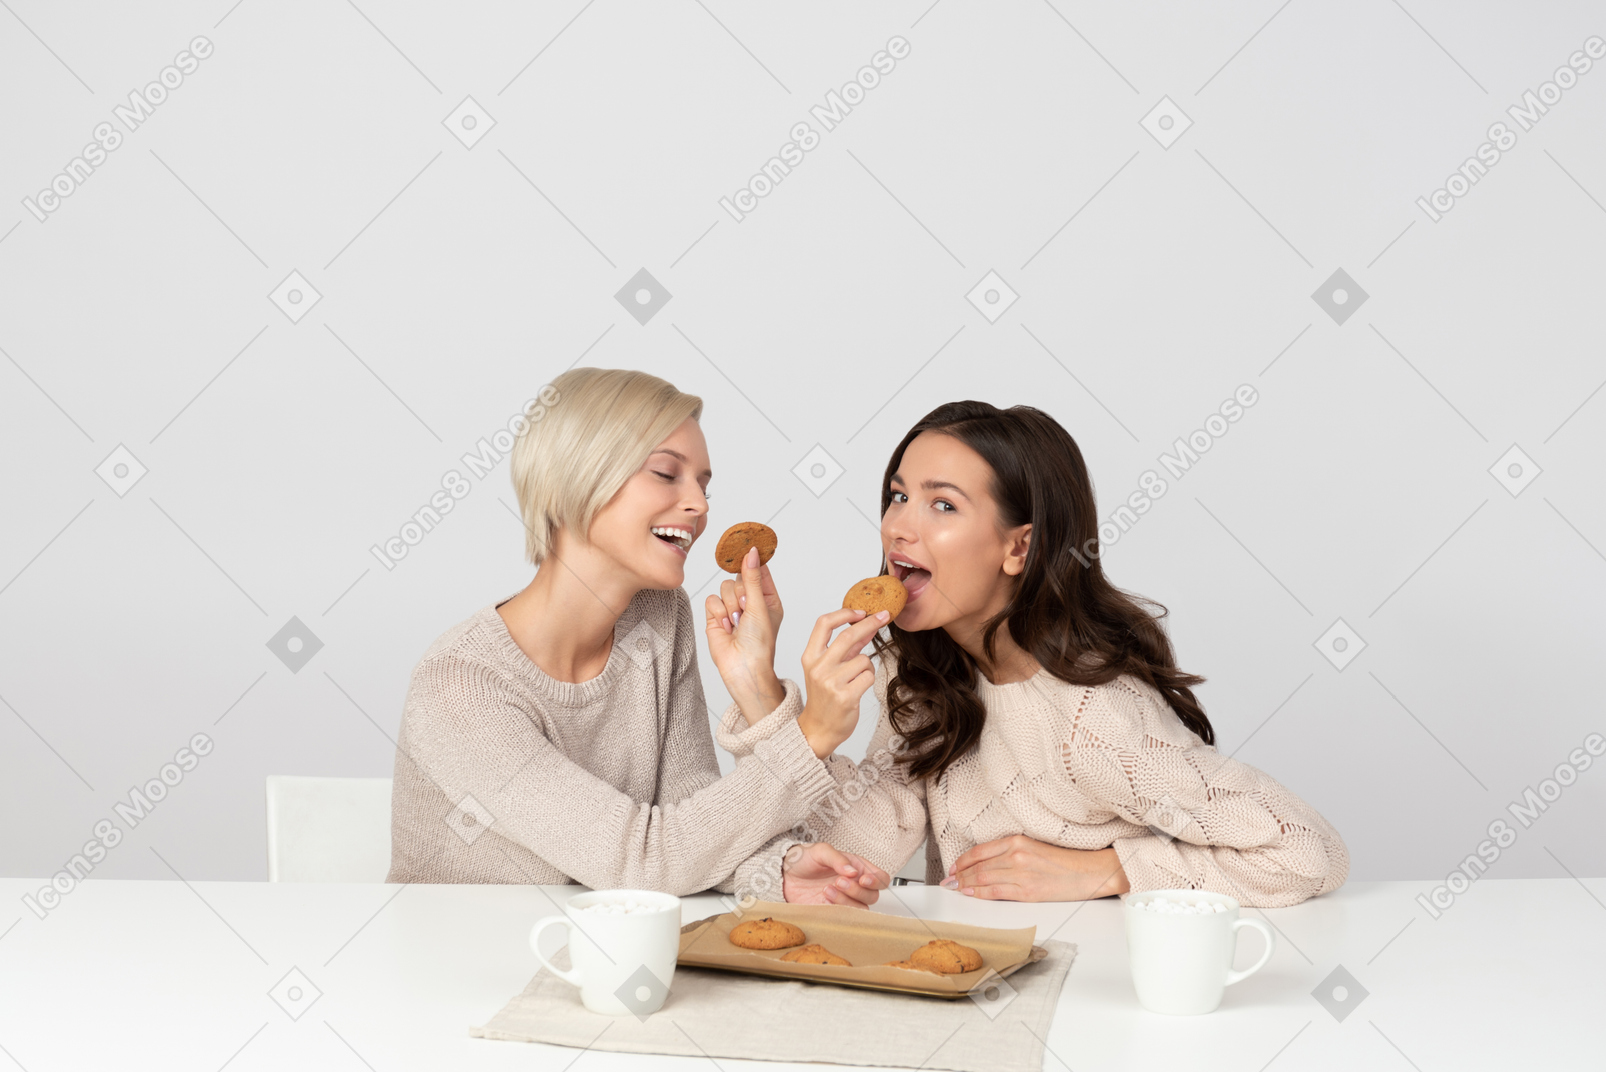 Mulheres jovens se alimentando com biscoitos